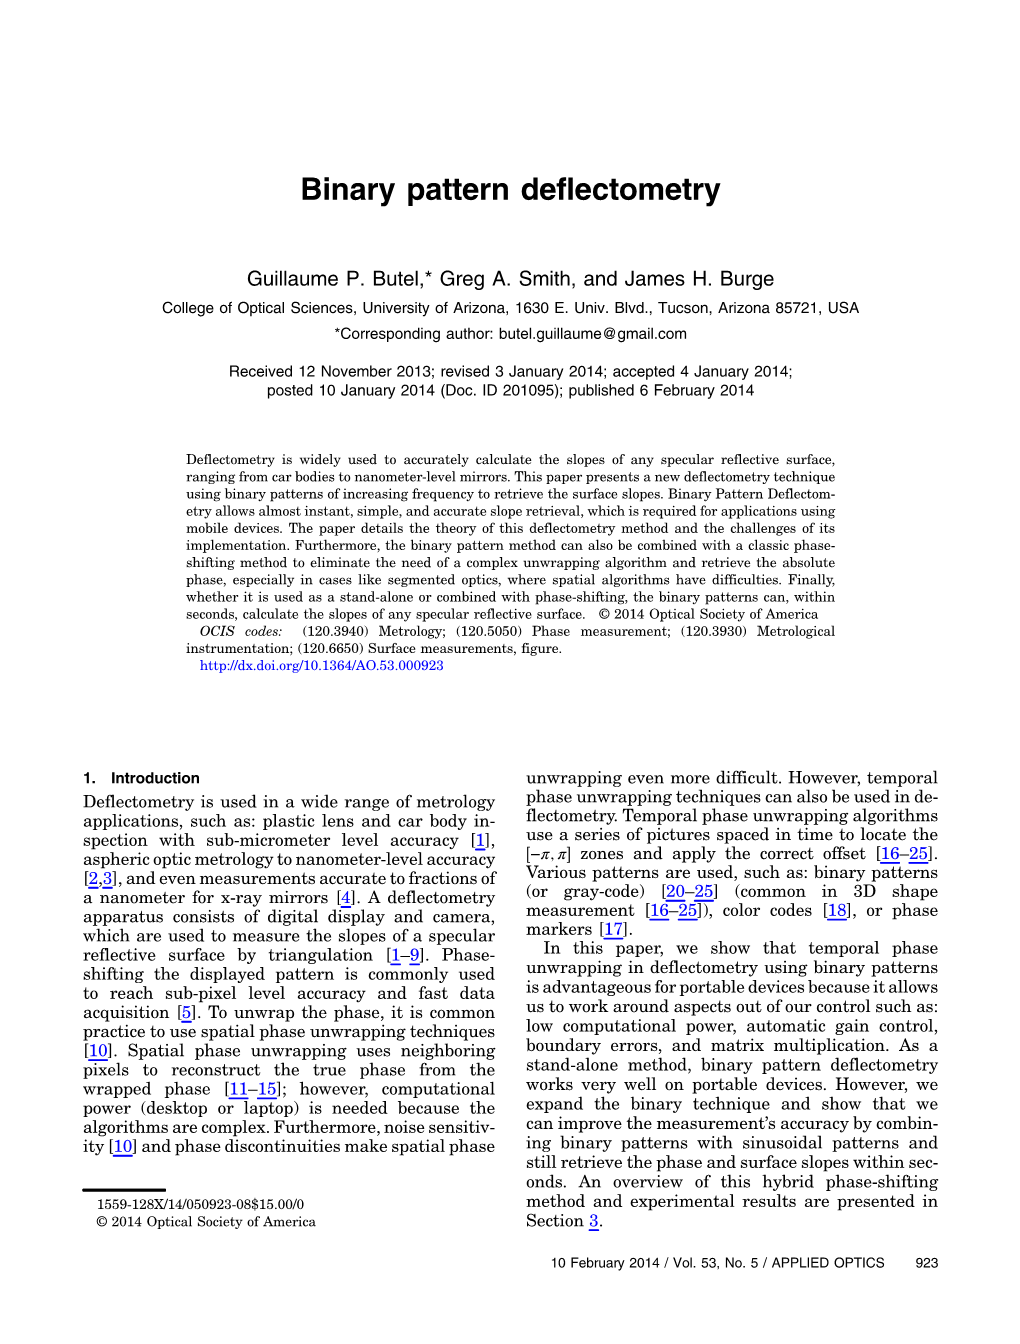 Binary Pattern Deflectometry